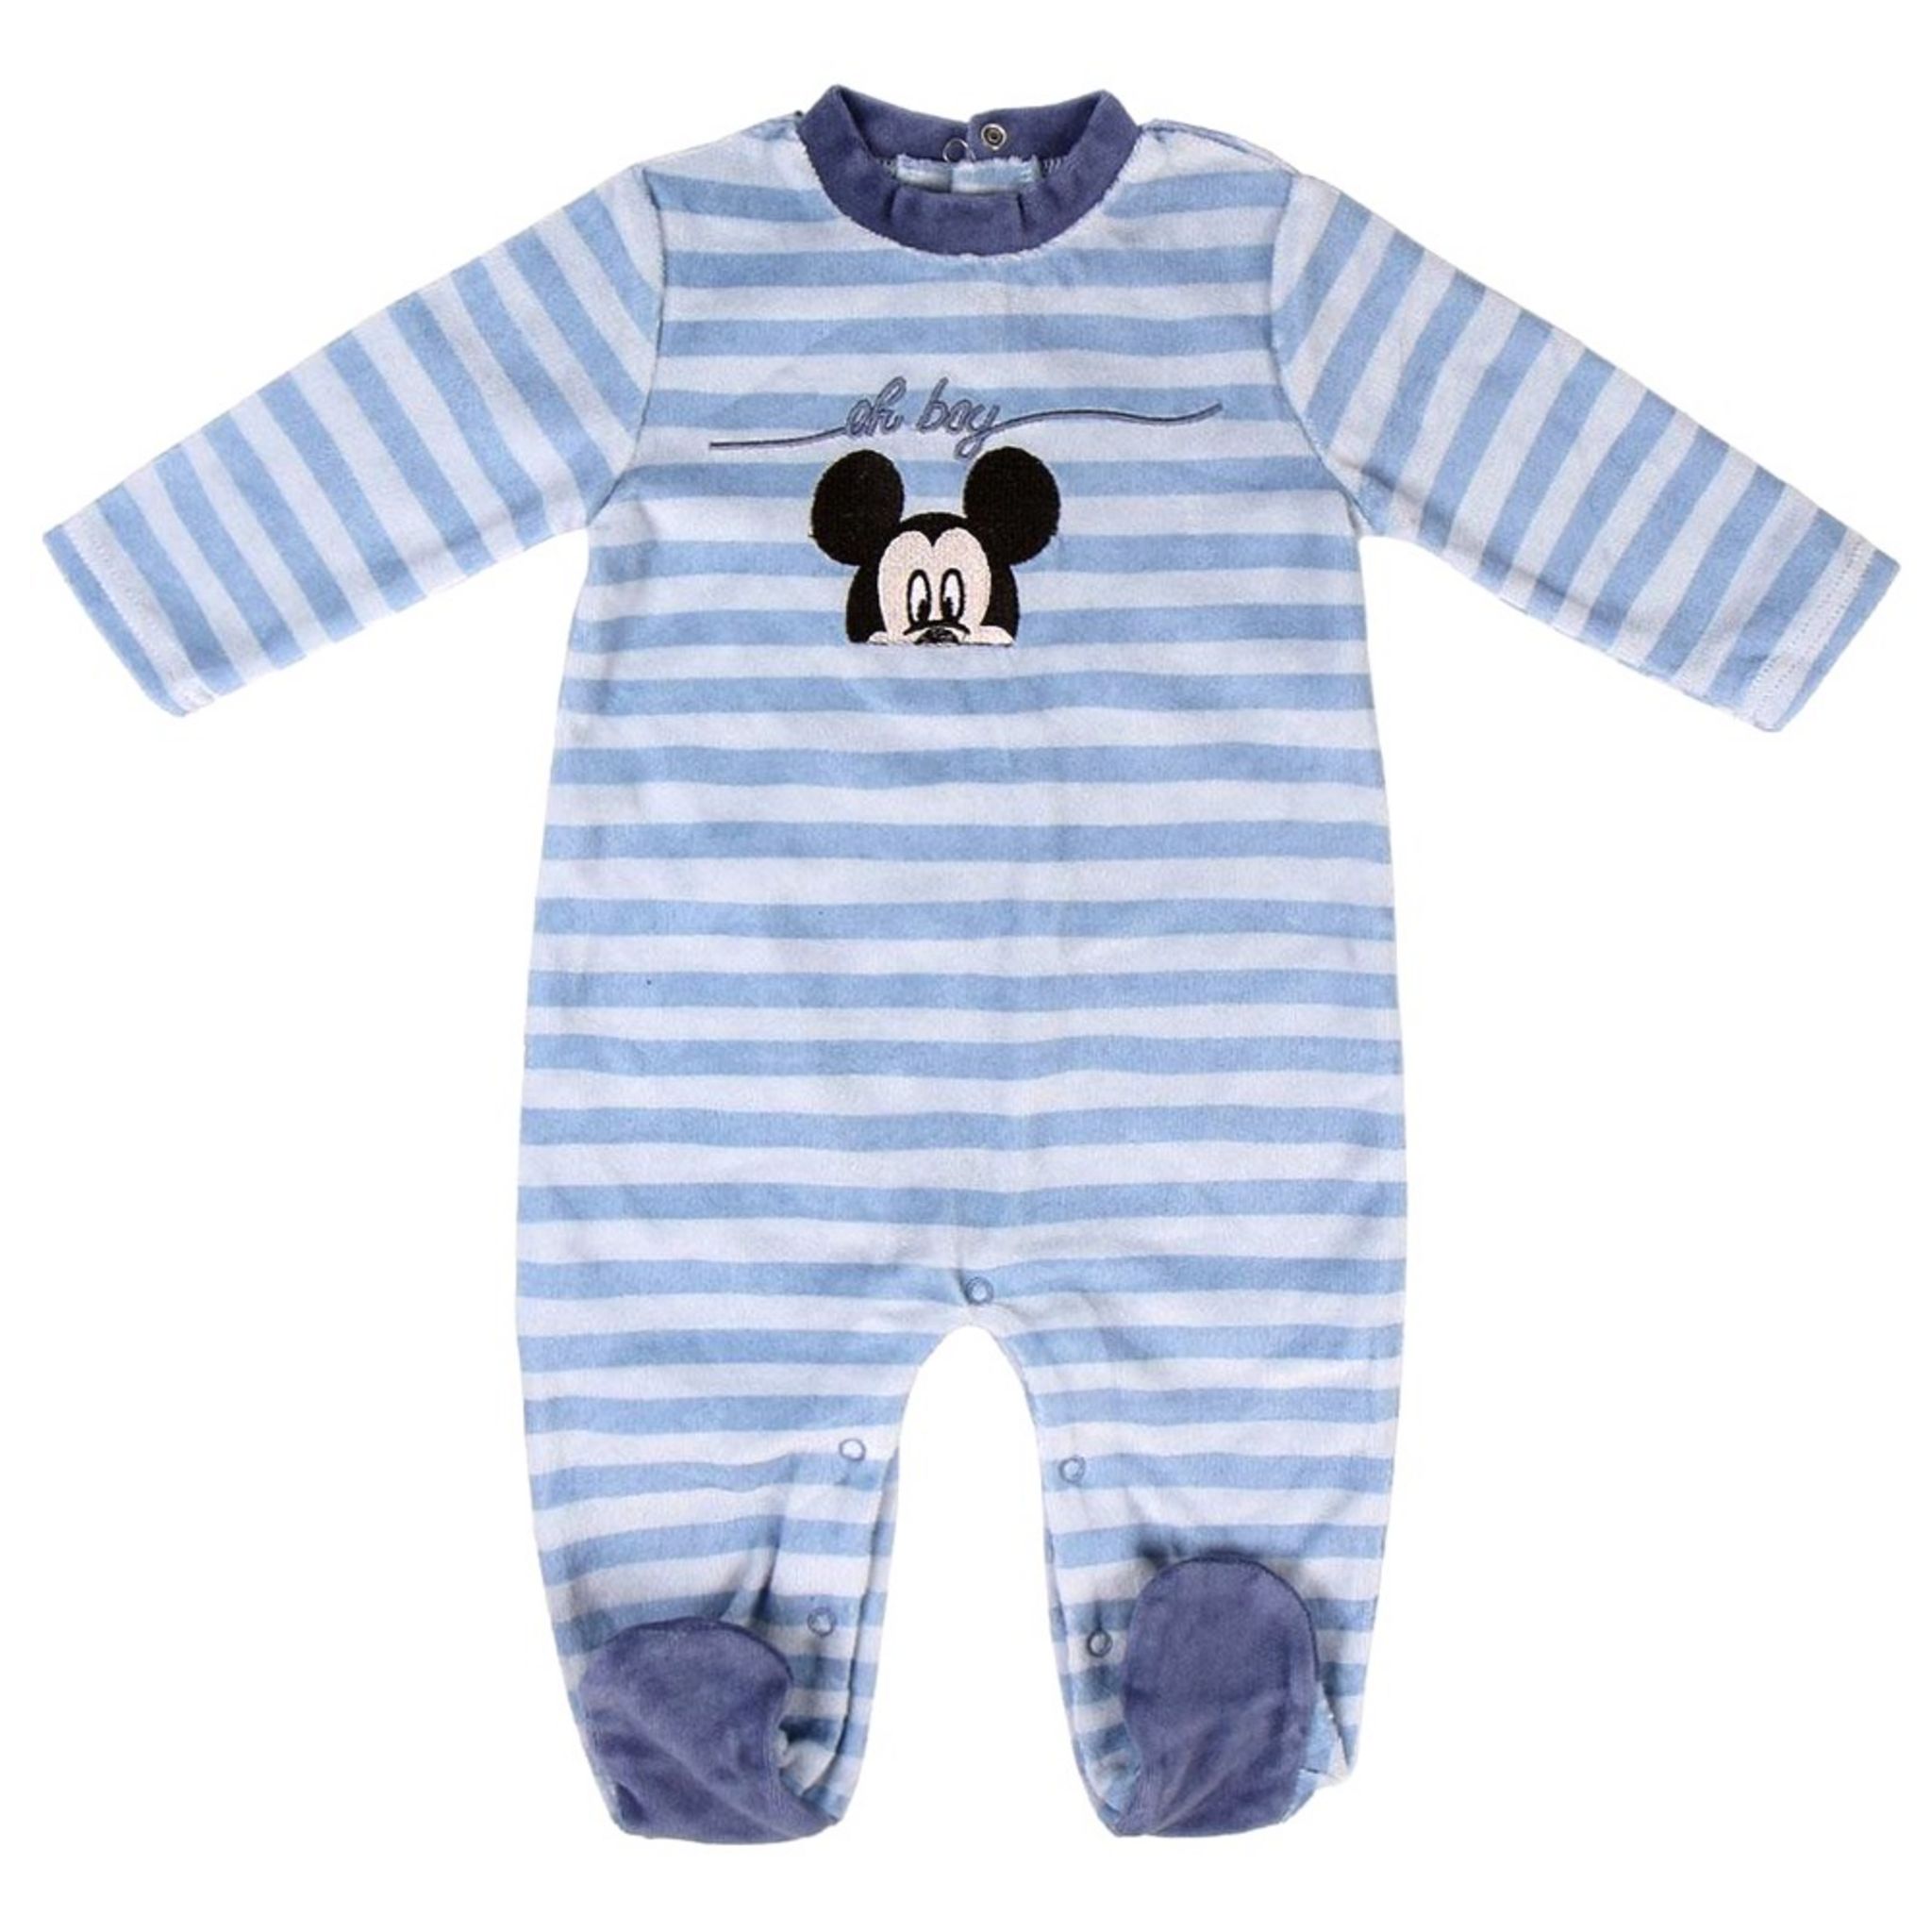 Pyjama bébé dors bien 1 mois personnalisé avec prénom